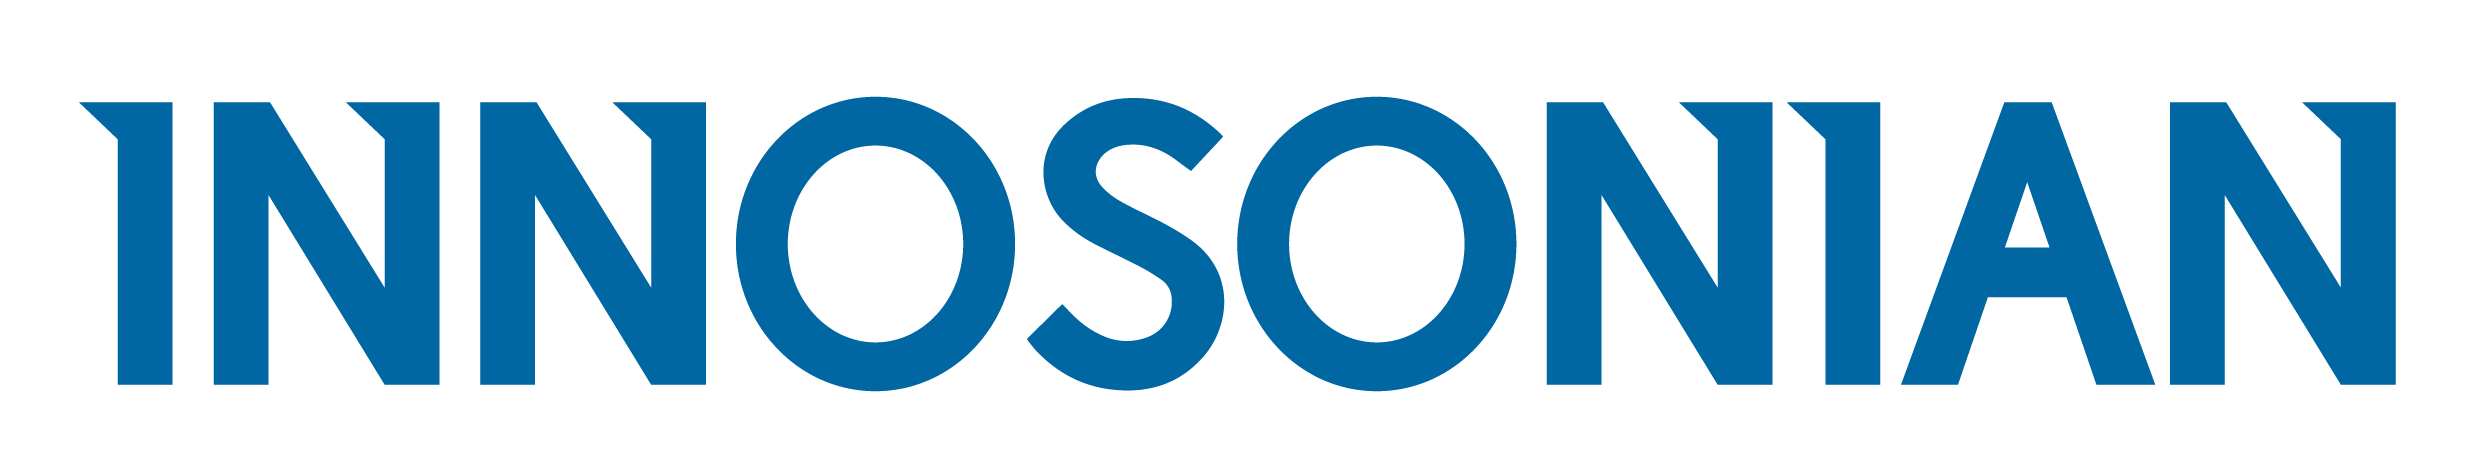 sponsor logo - Innosonian